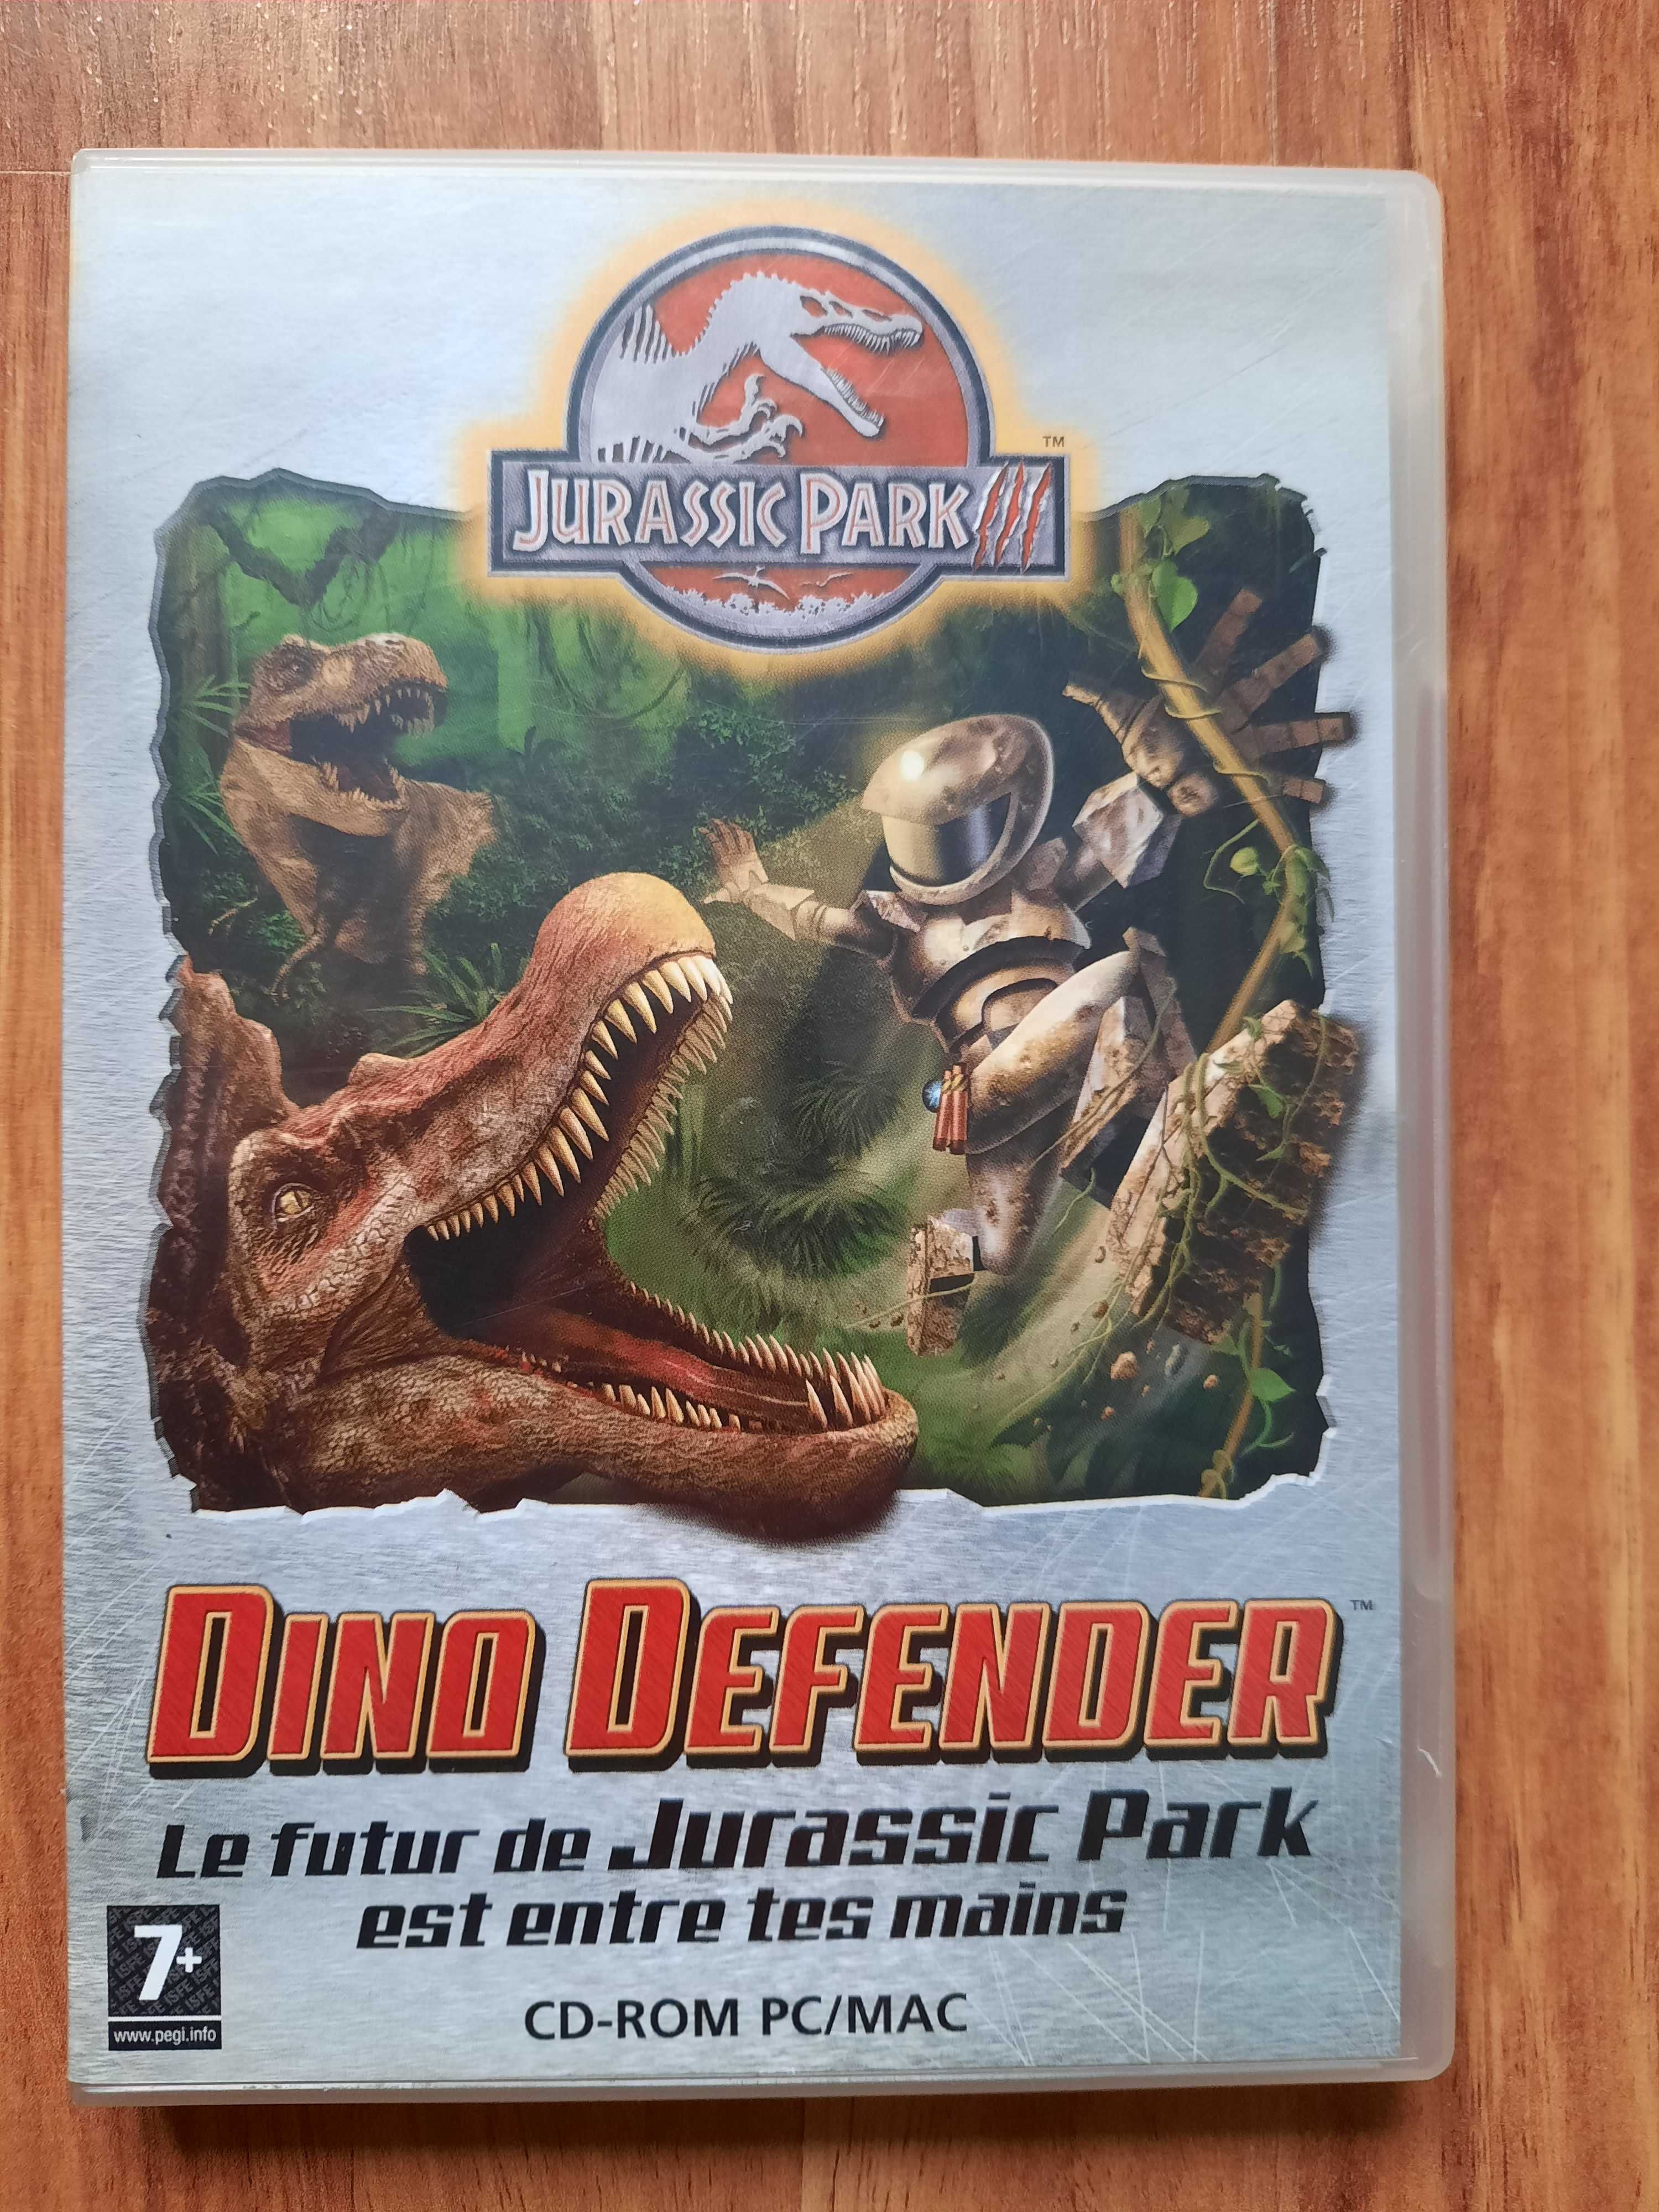 Jurassic Park III: Dino Defender (PC, CD-ROM, 2001)